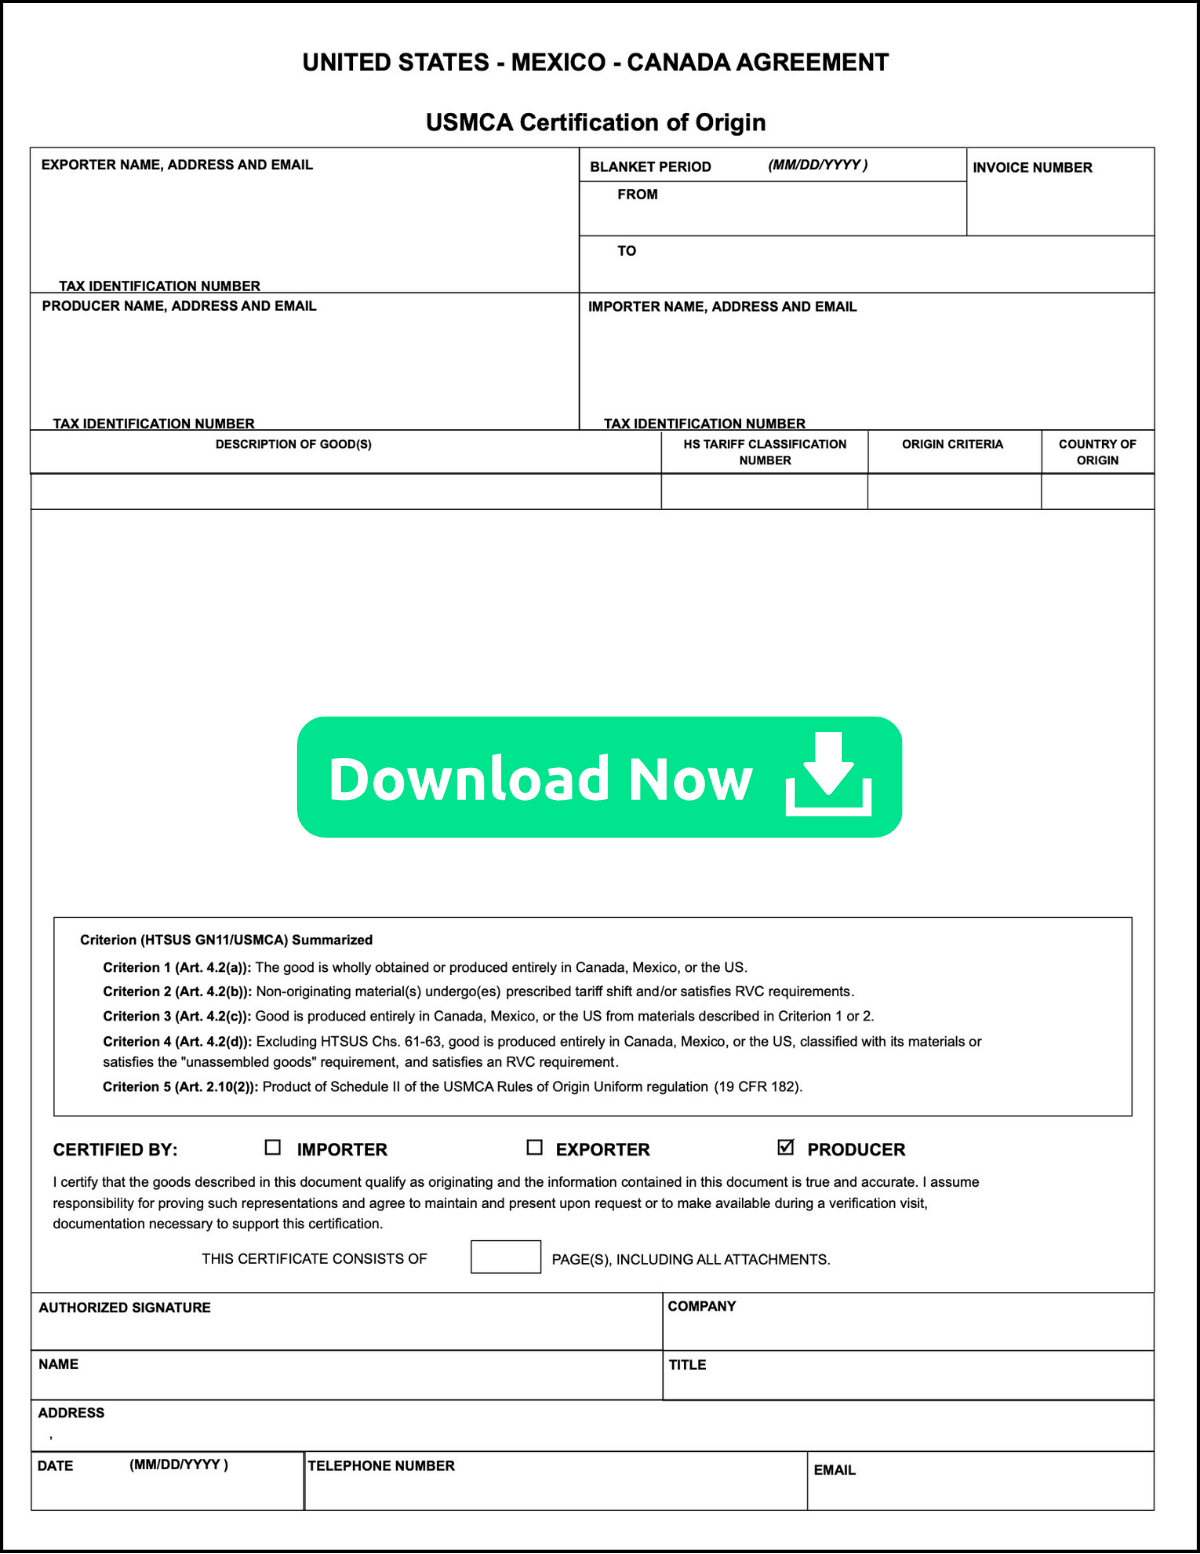 USMCA Certificate of Origin | Download Now